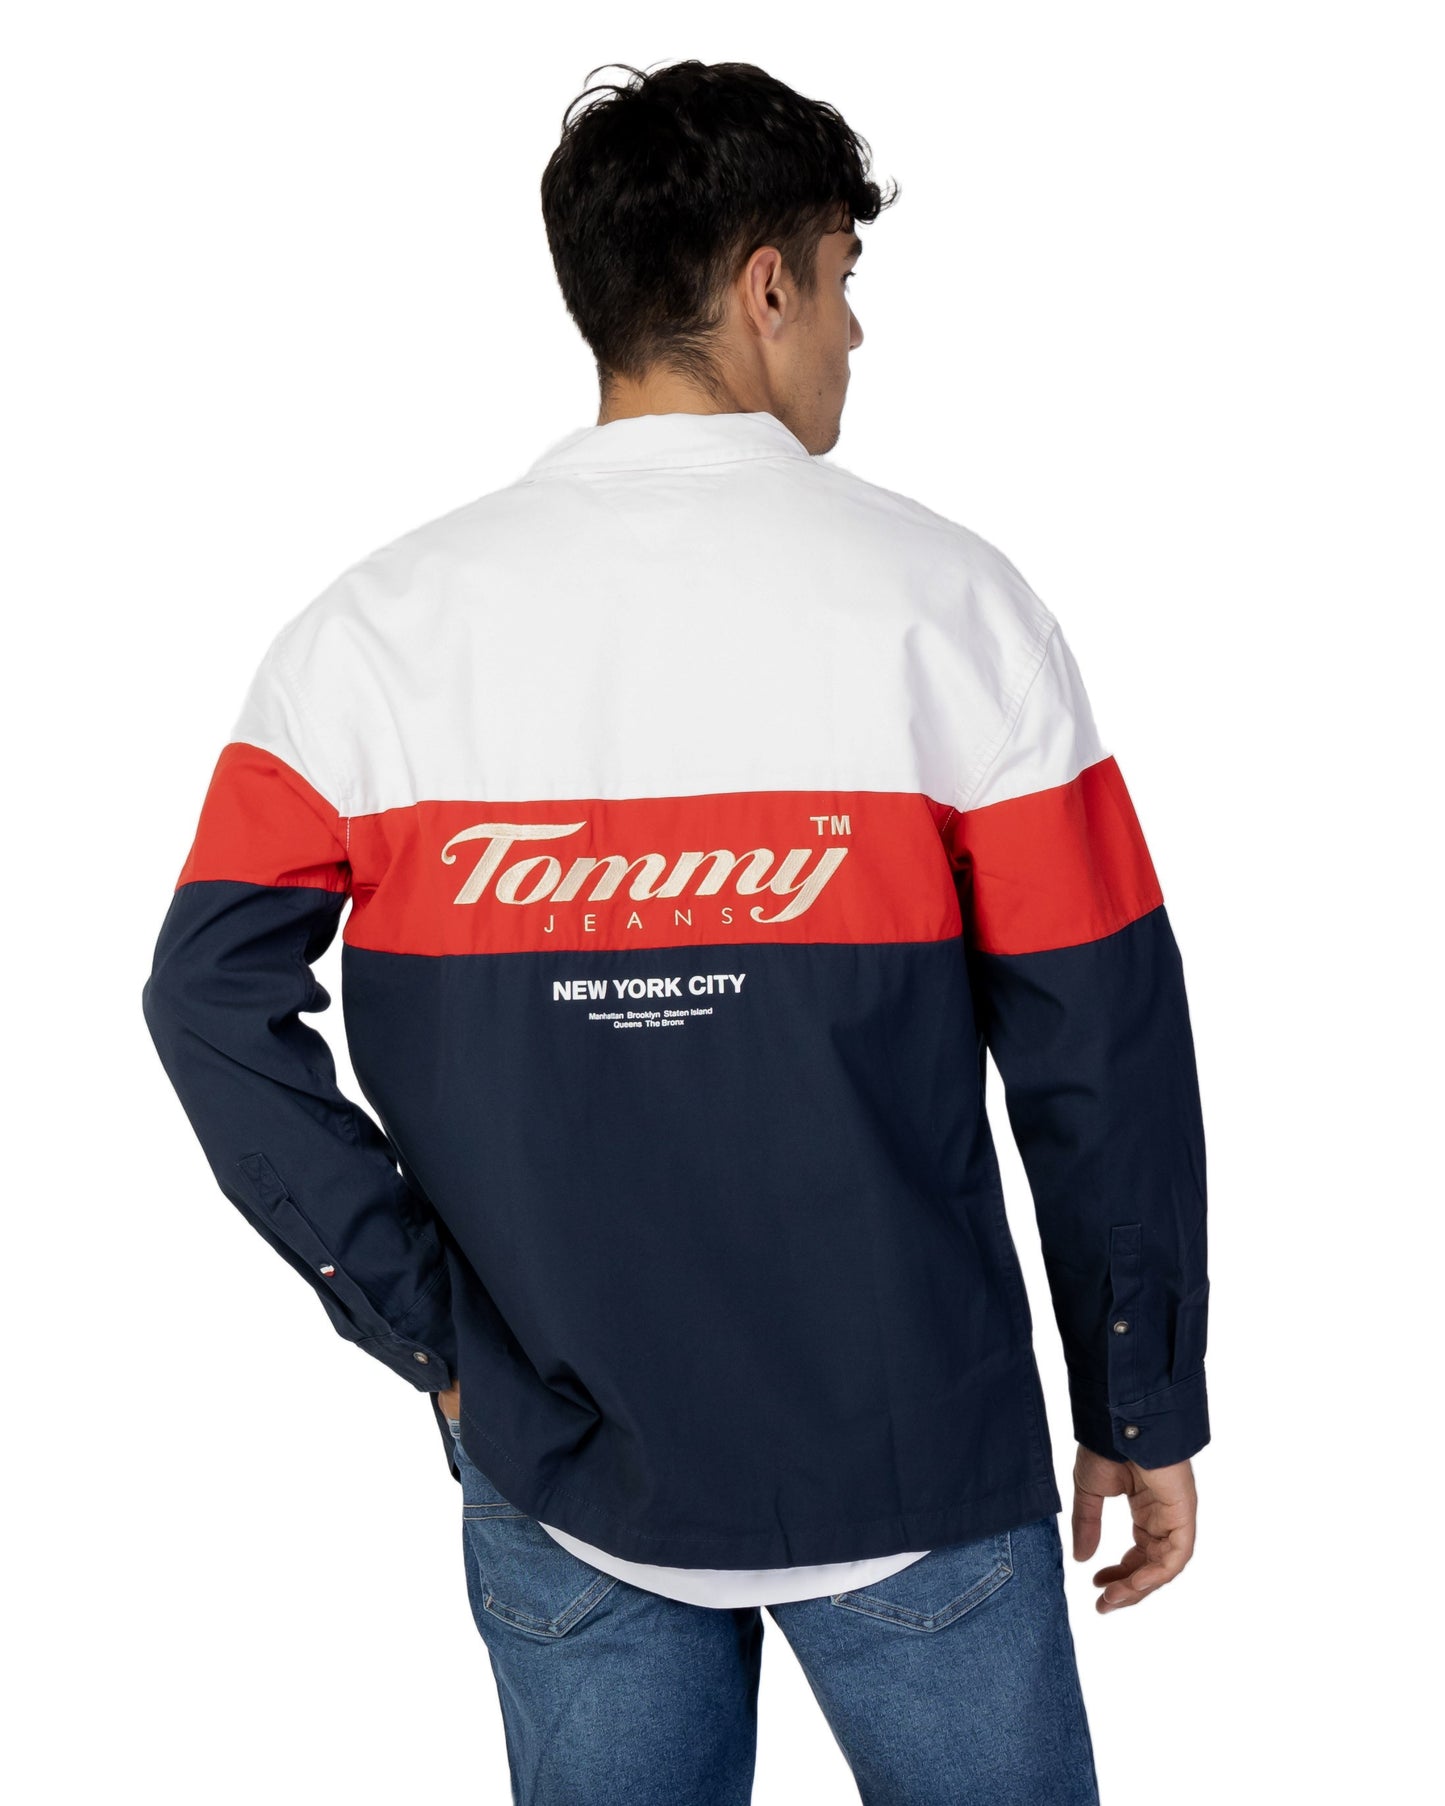 Tommy Hilfiger Jeans Men Shirt